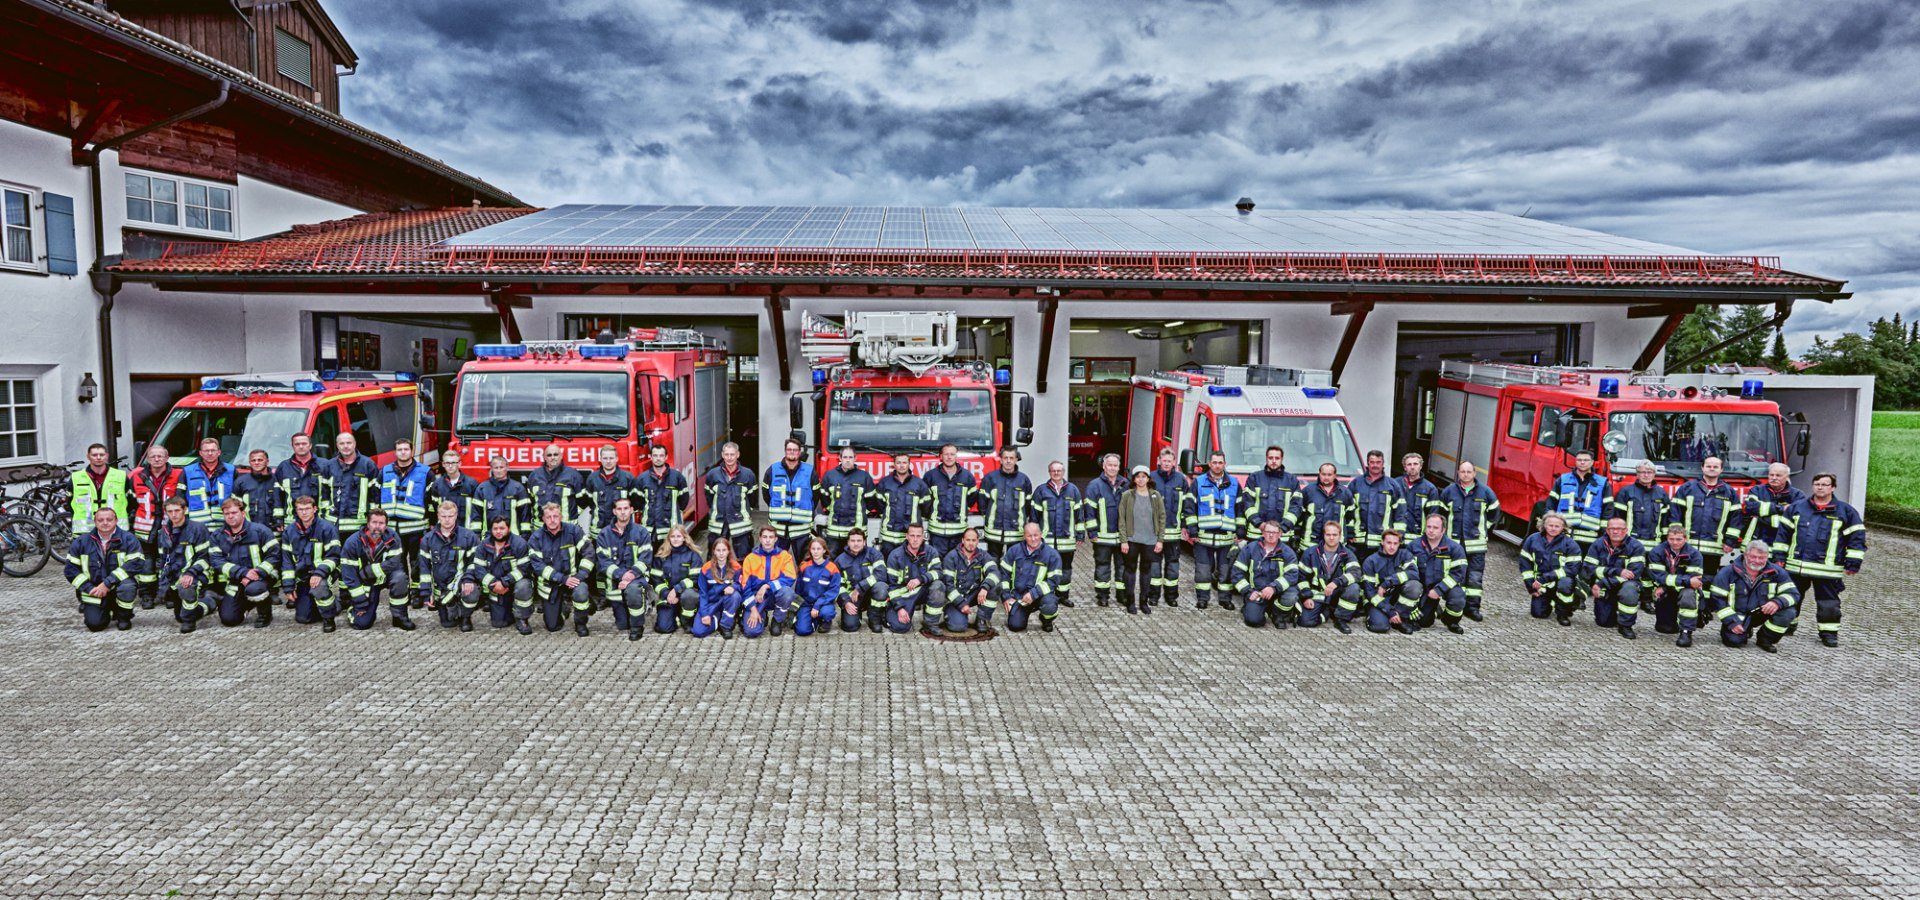 Feuerwehr Grassau Mannschaftsfoto, © Fotostudio Markus Schmuck